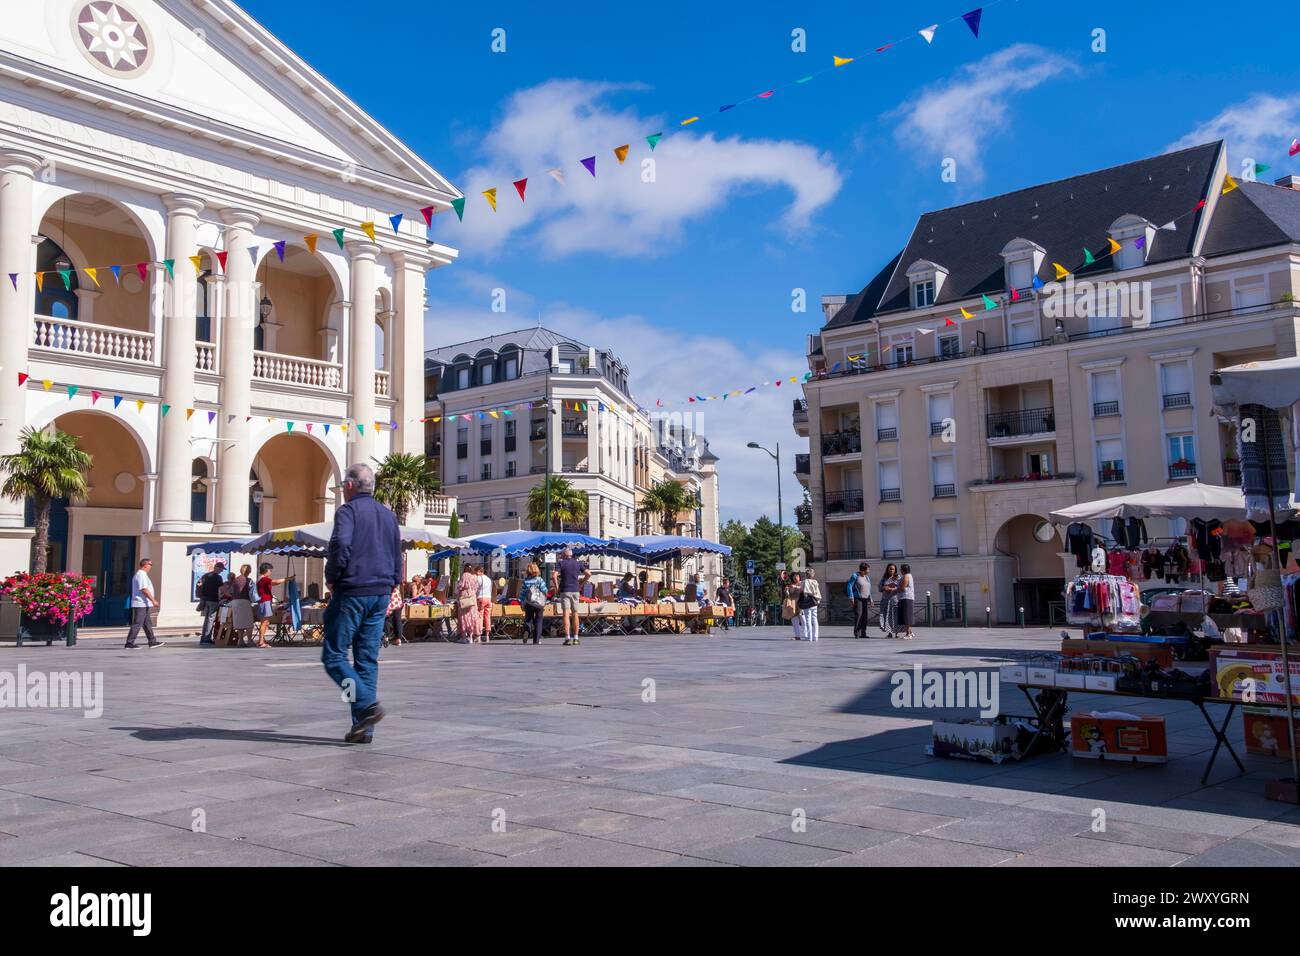 Le Plessis-Robinson (Paris area): market in “place Jane Rhodes” square, pediment of the cultural center “Maison des arts” and buildings Stock Photo